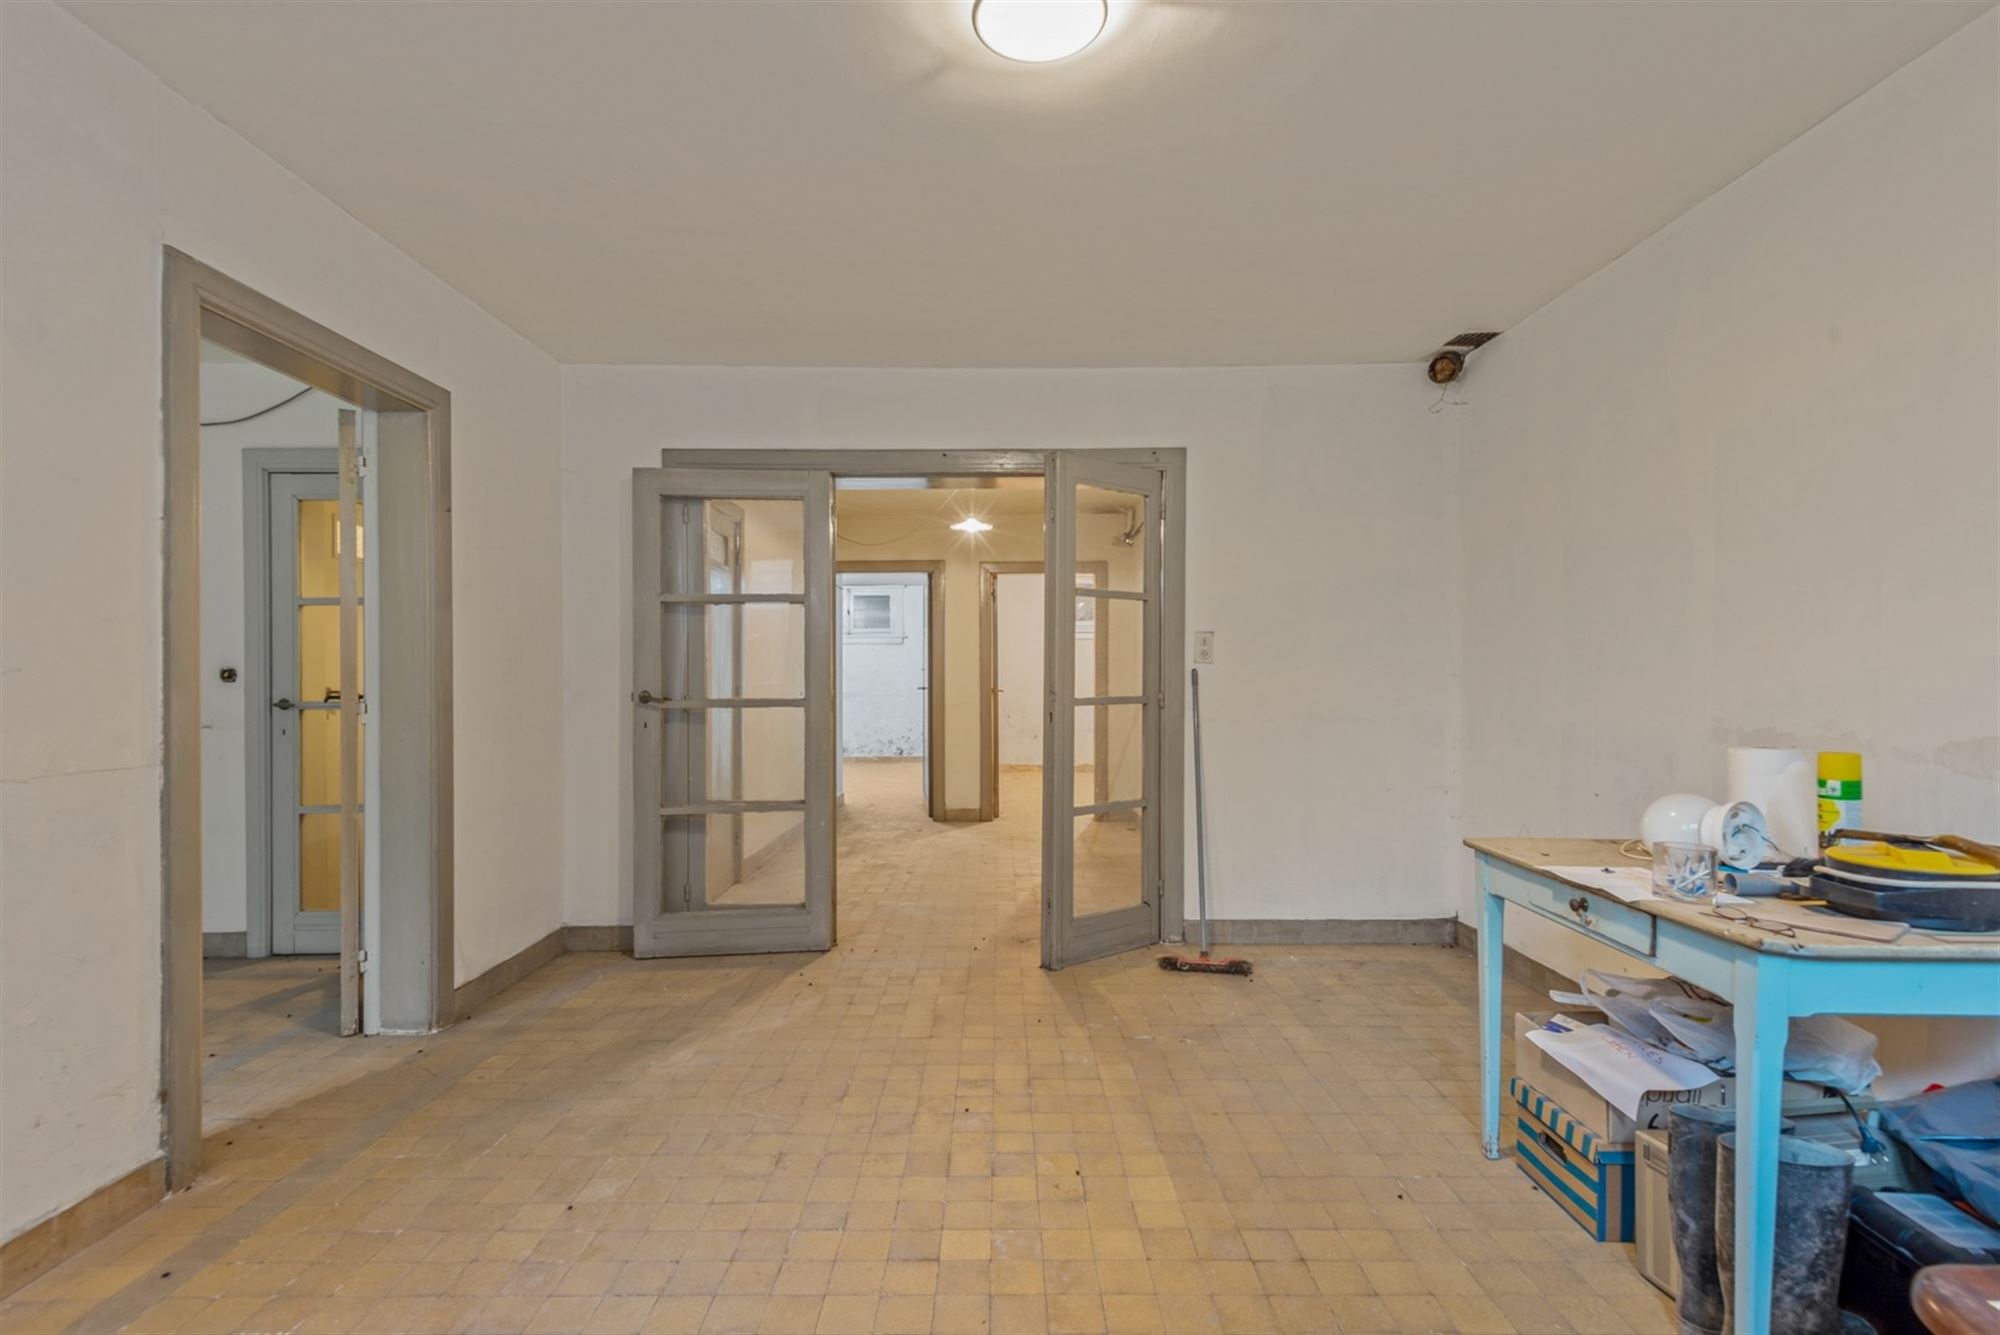 Atelier/ kantoor in entresol te Antwerpen - Tentoonstellingswijk foto 1